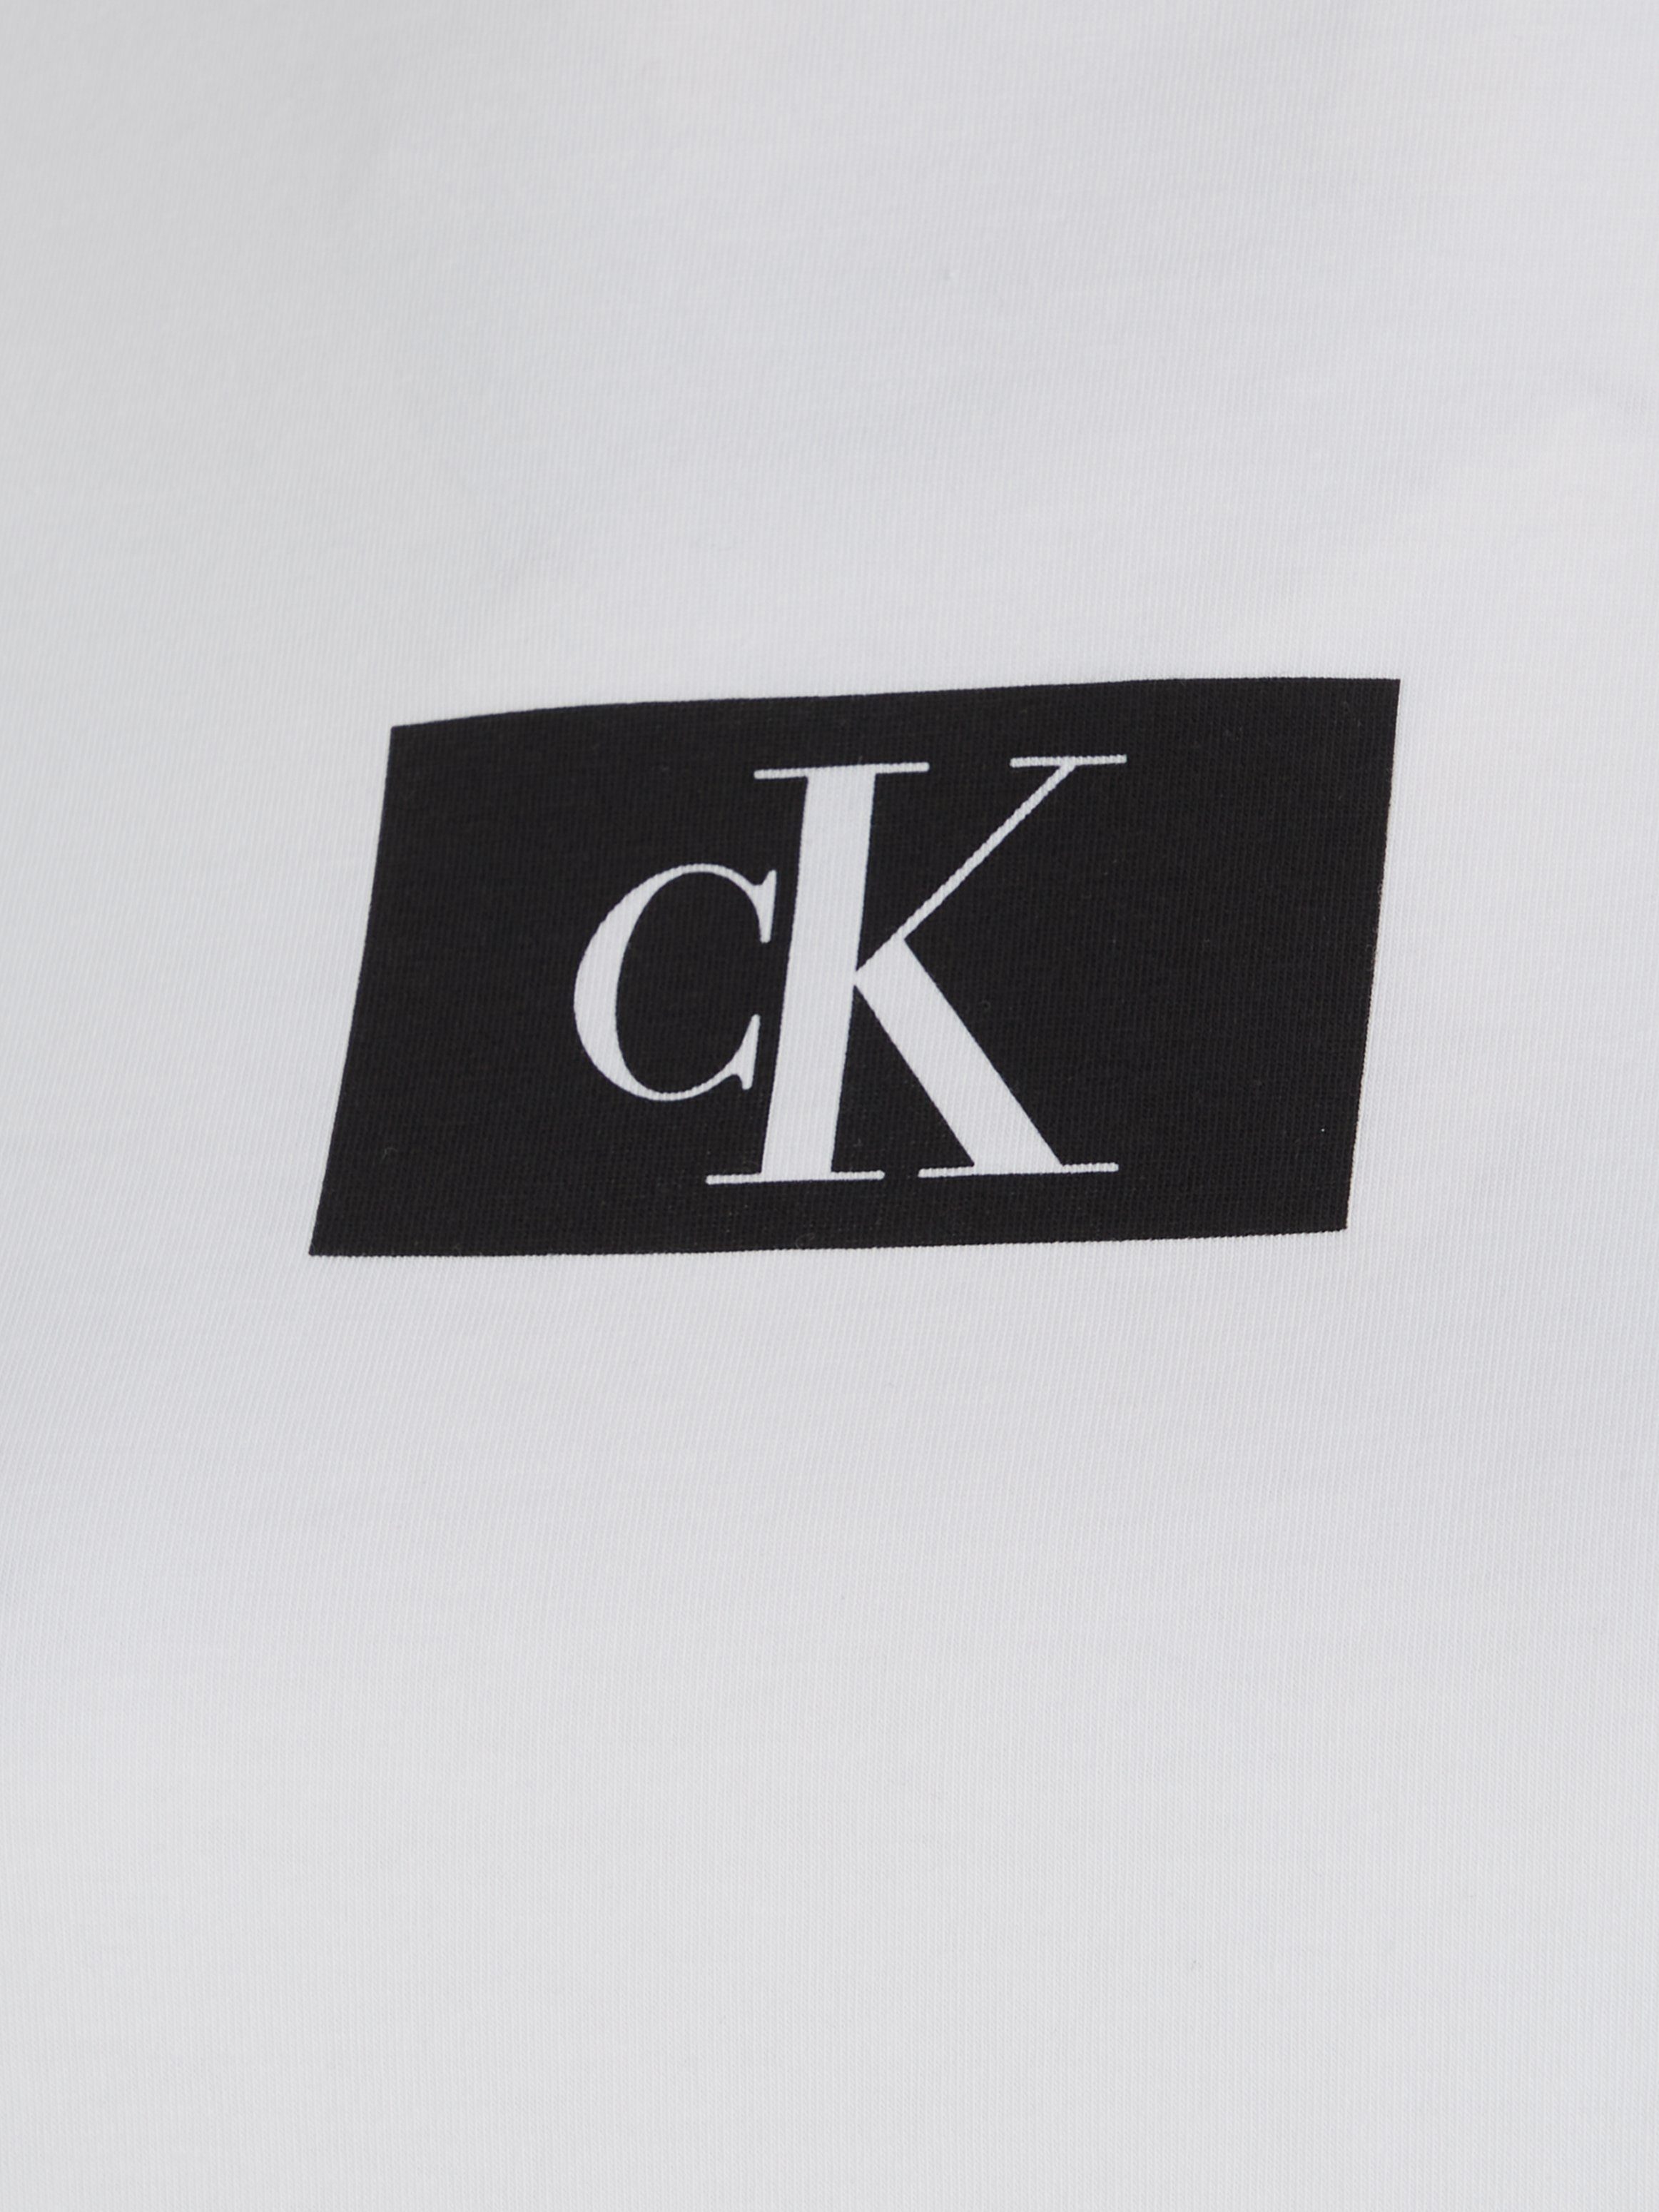 Kurzarmshirt CREW Underwear S/S WHITE Klein Calvin NECK